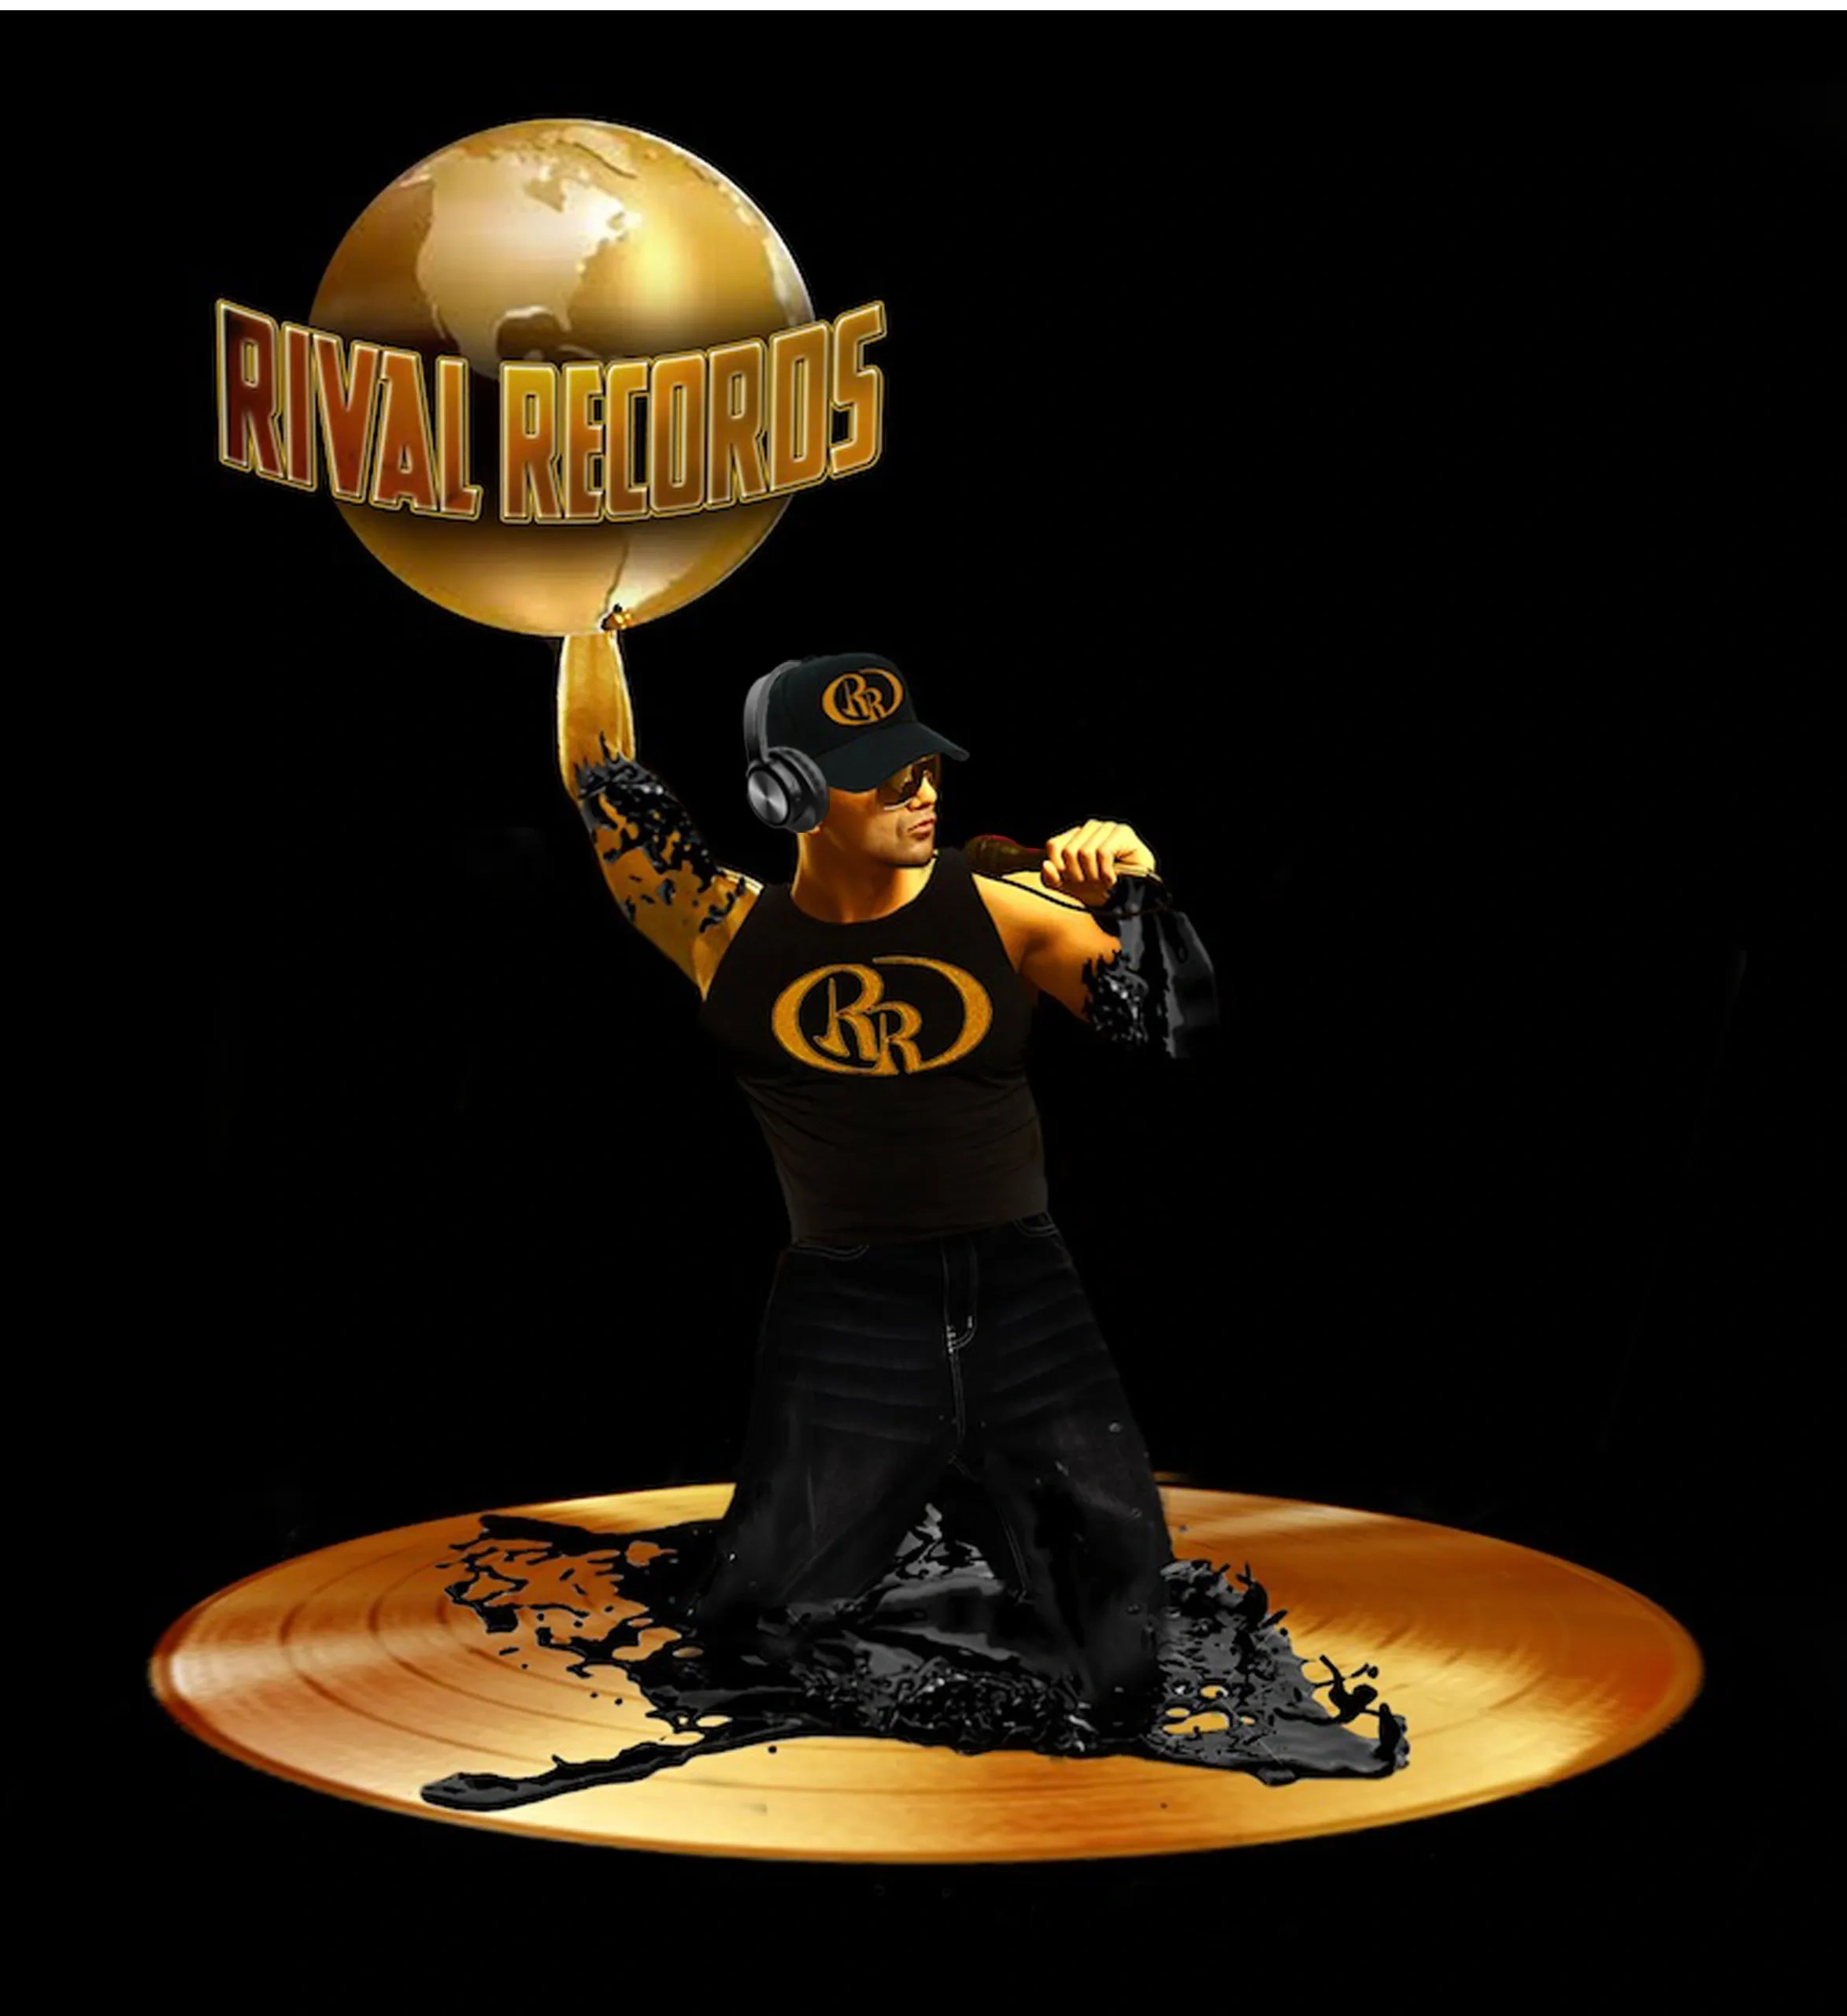 Rival Records